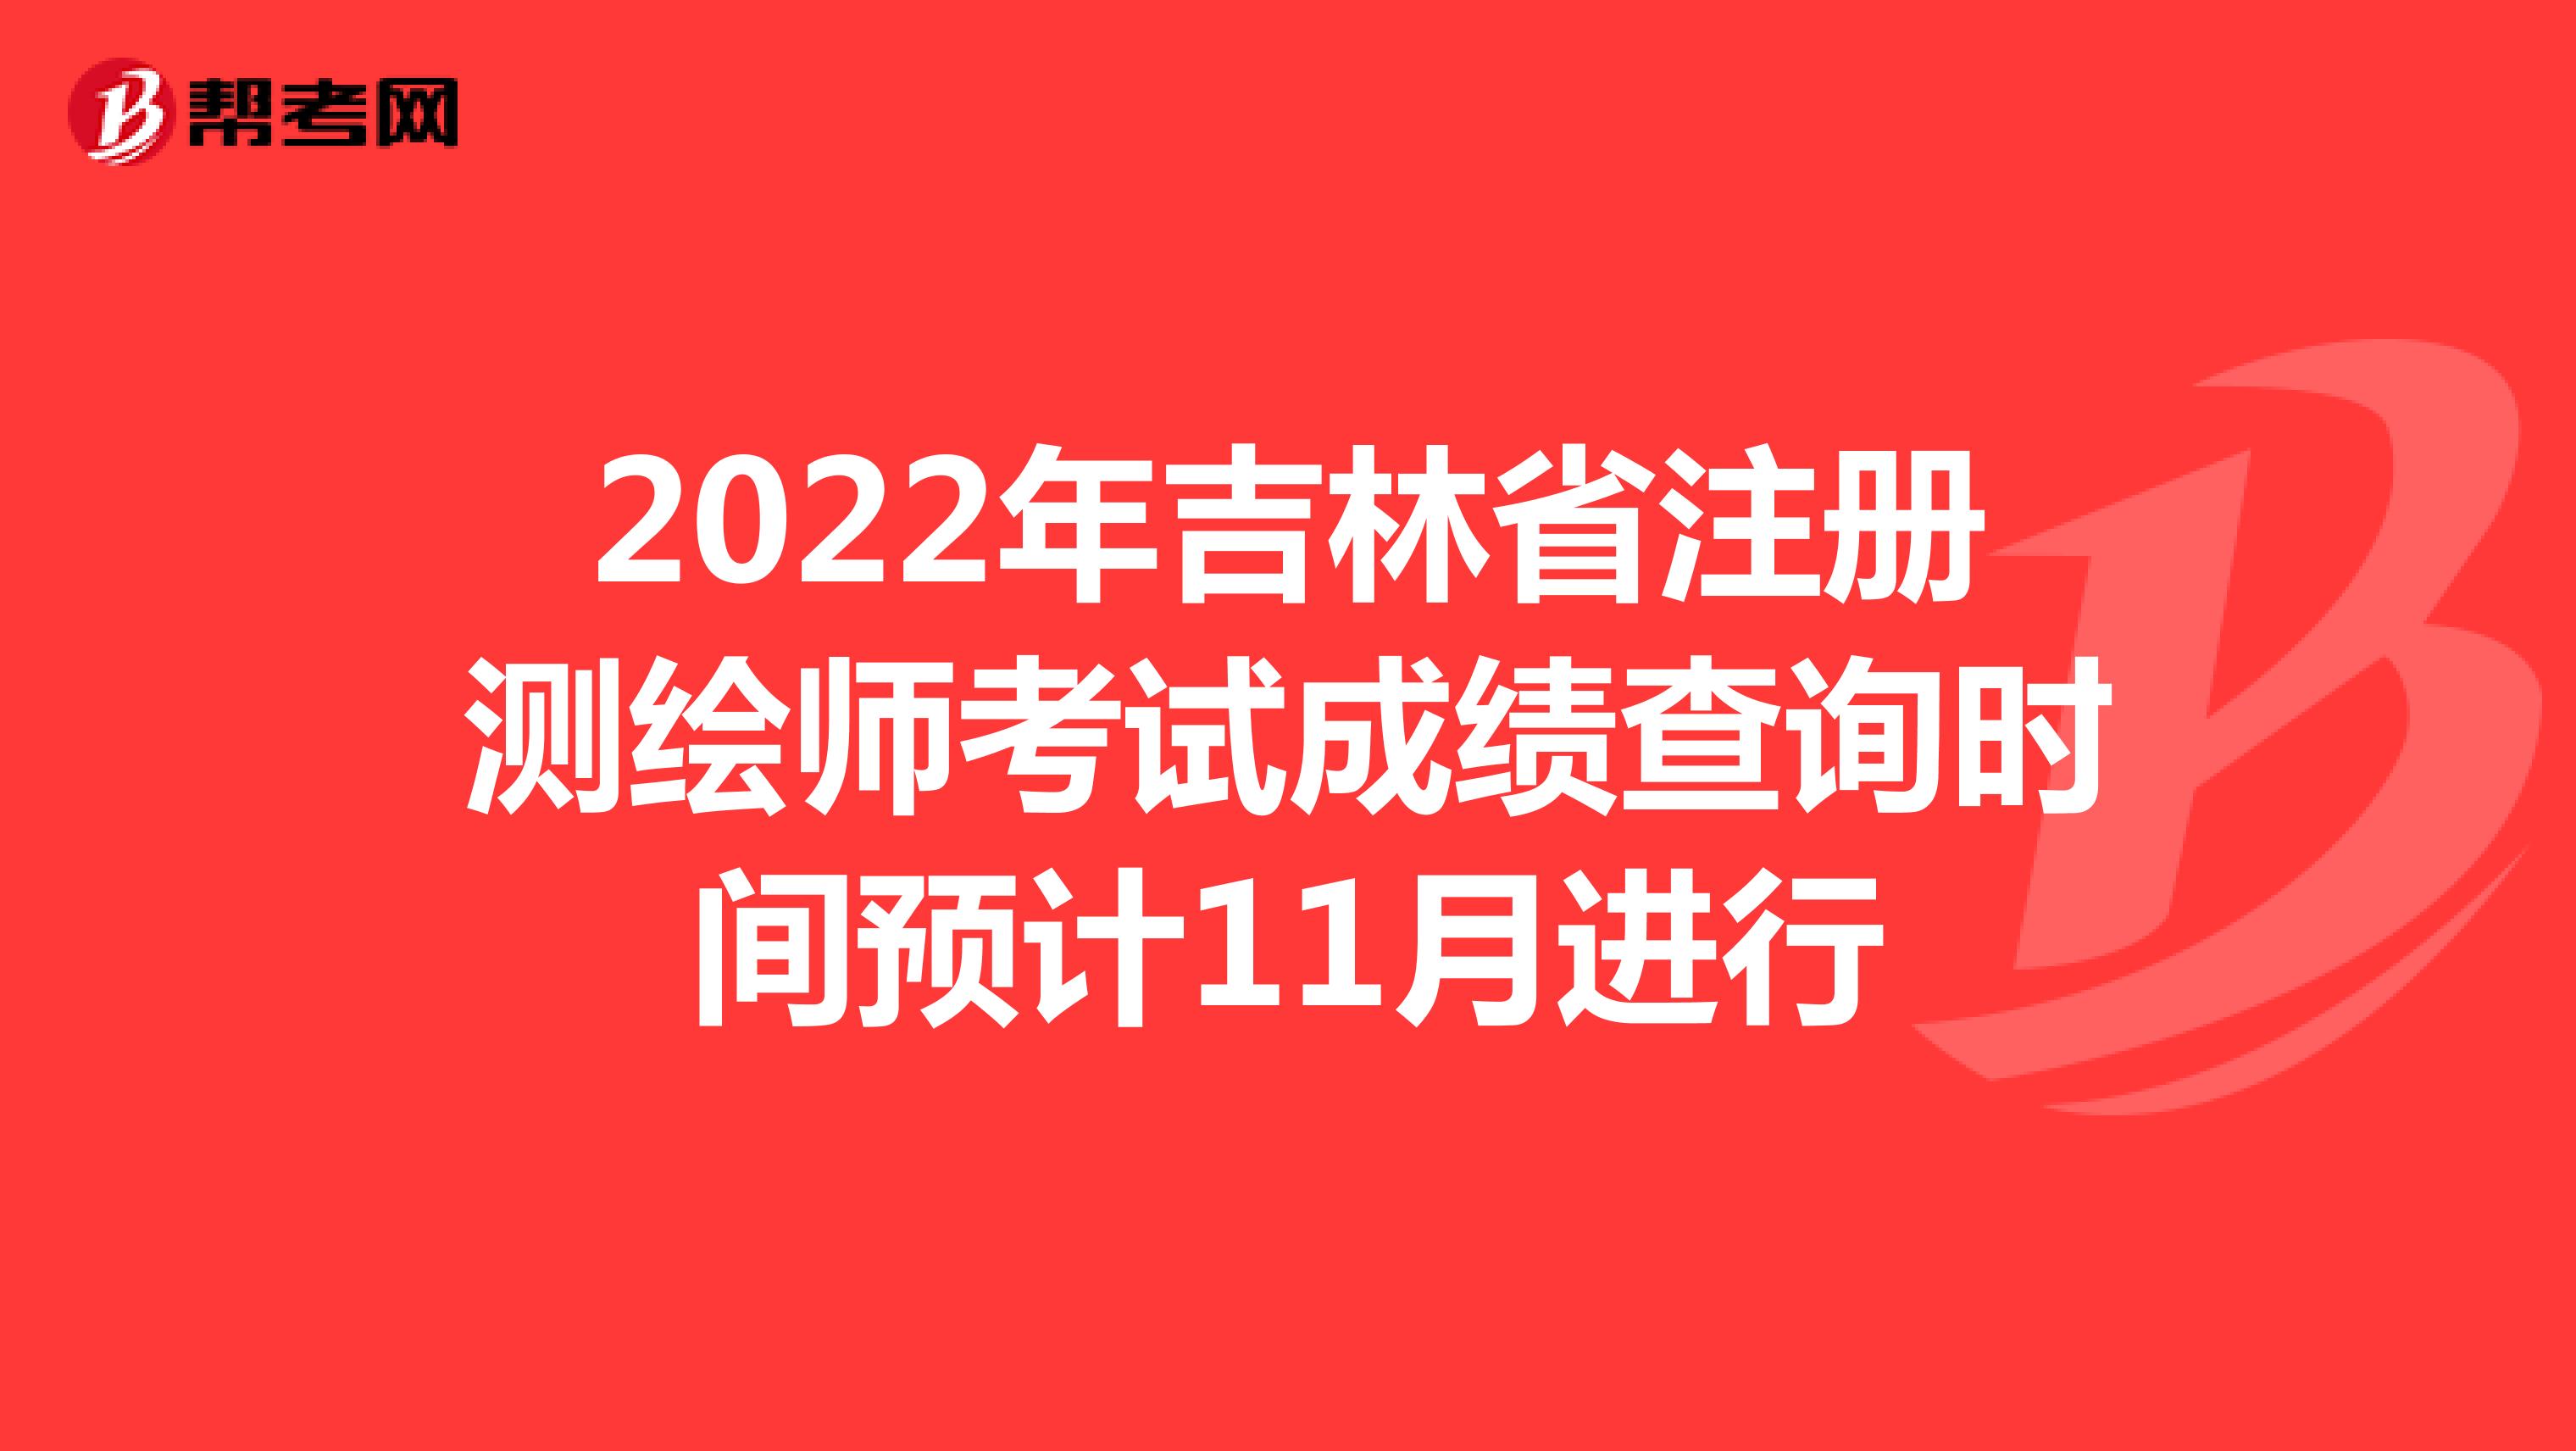 2022年吉林省注册测绘师考试成绩查询时间预计11月进行